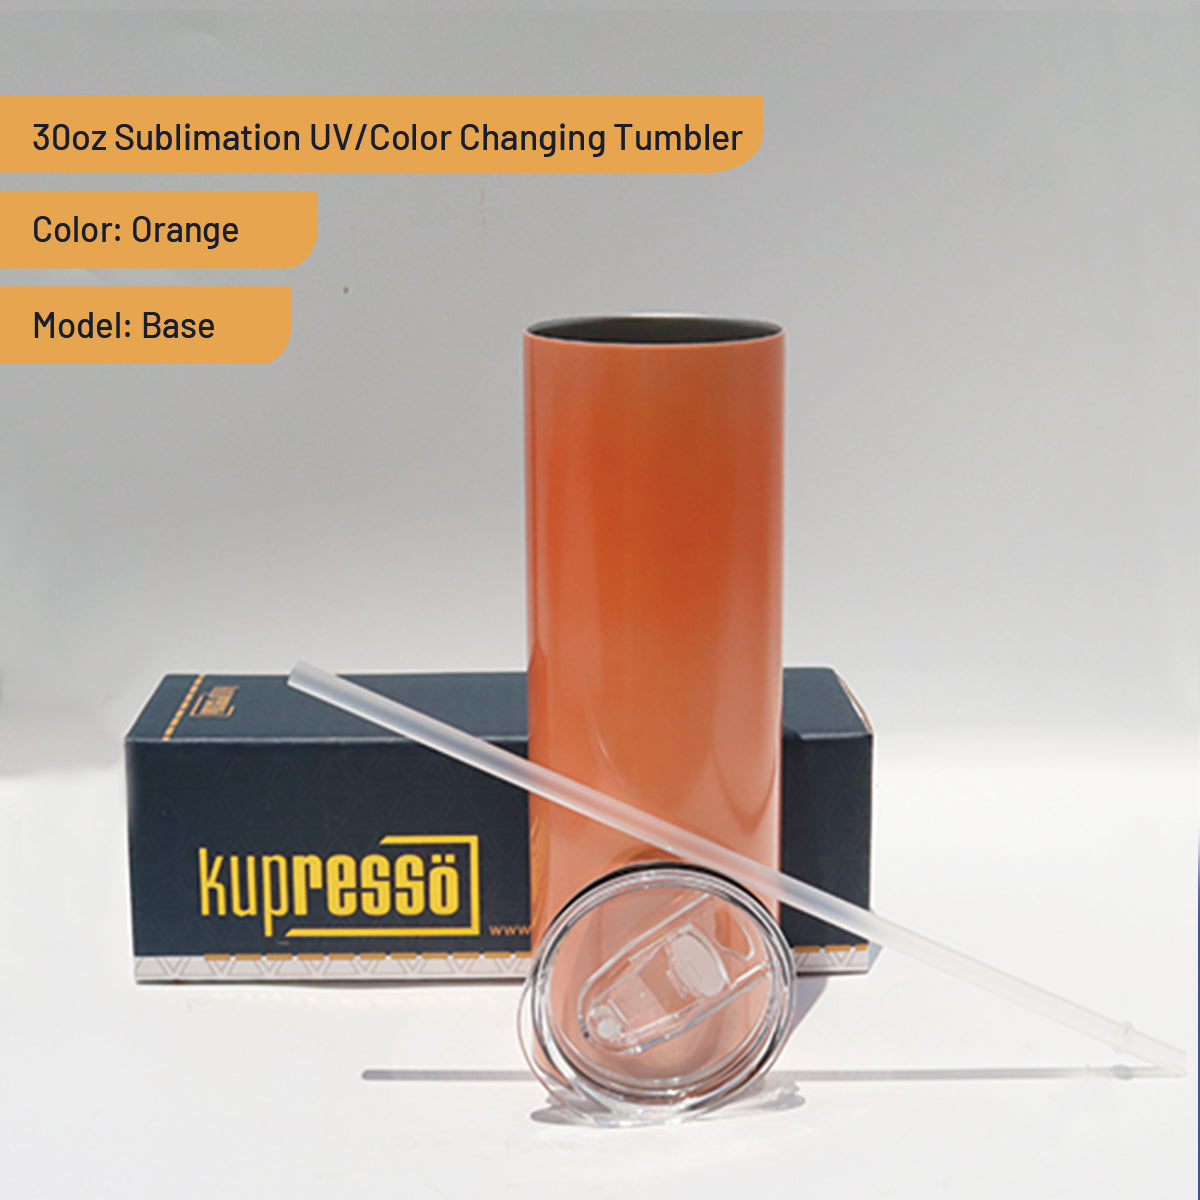 30oz Sublimation UV / Color Changing Tumbler Kupresso 